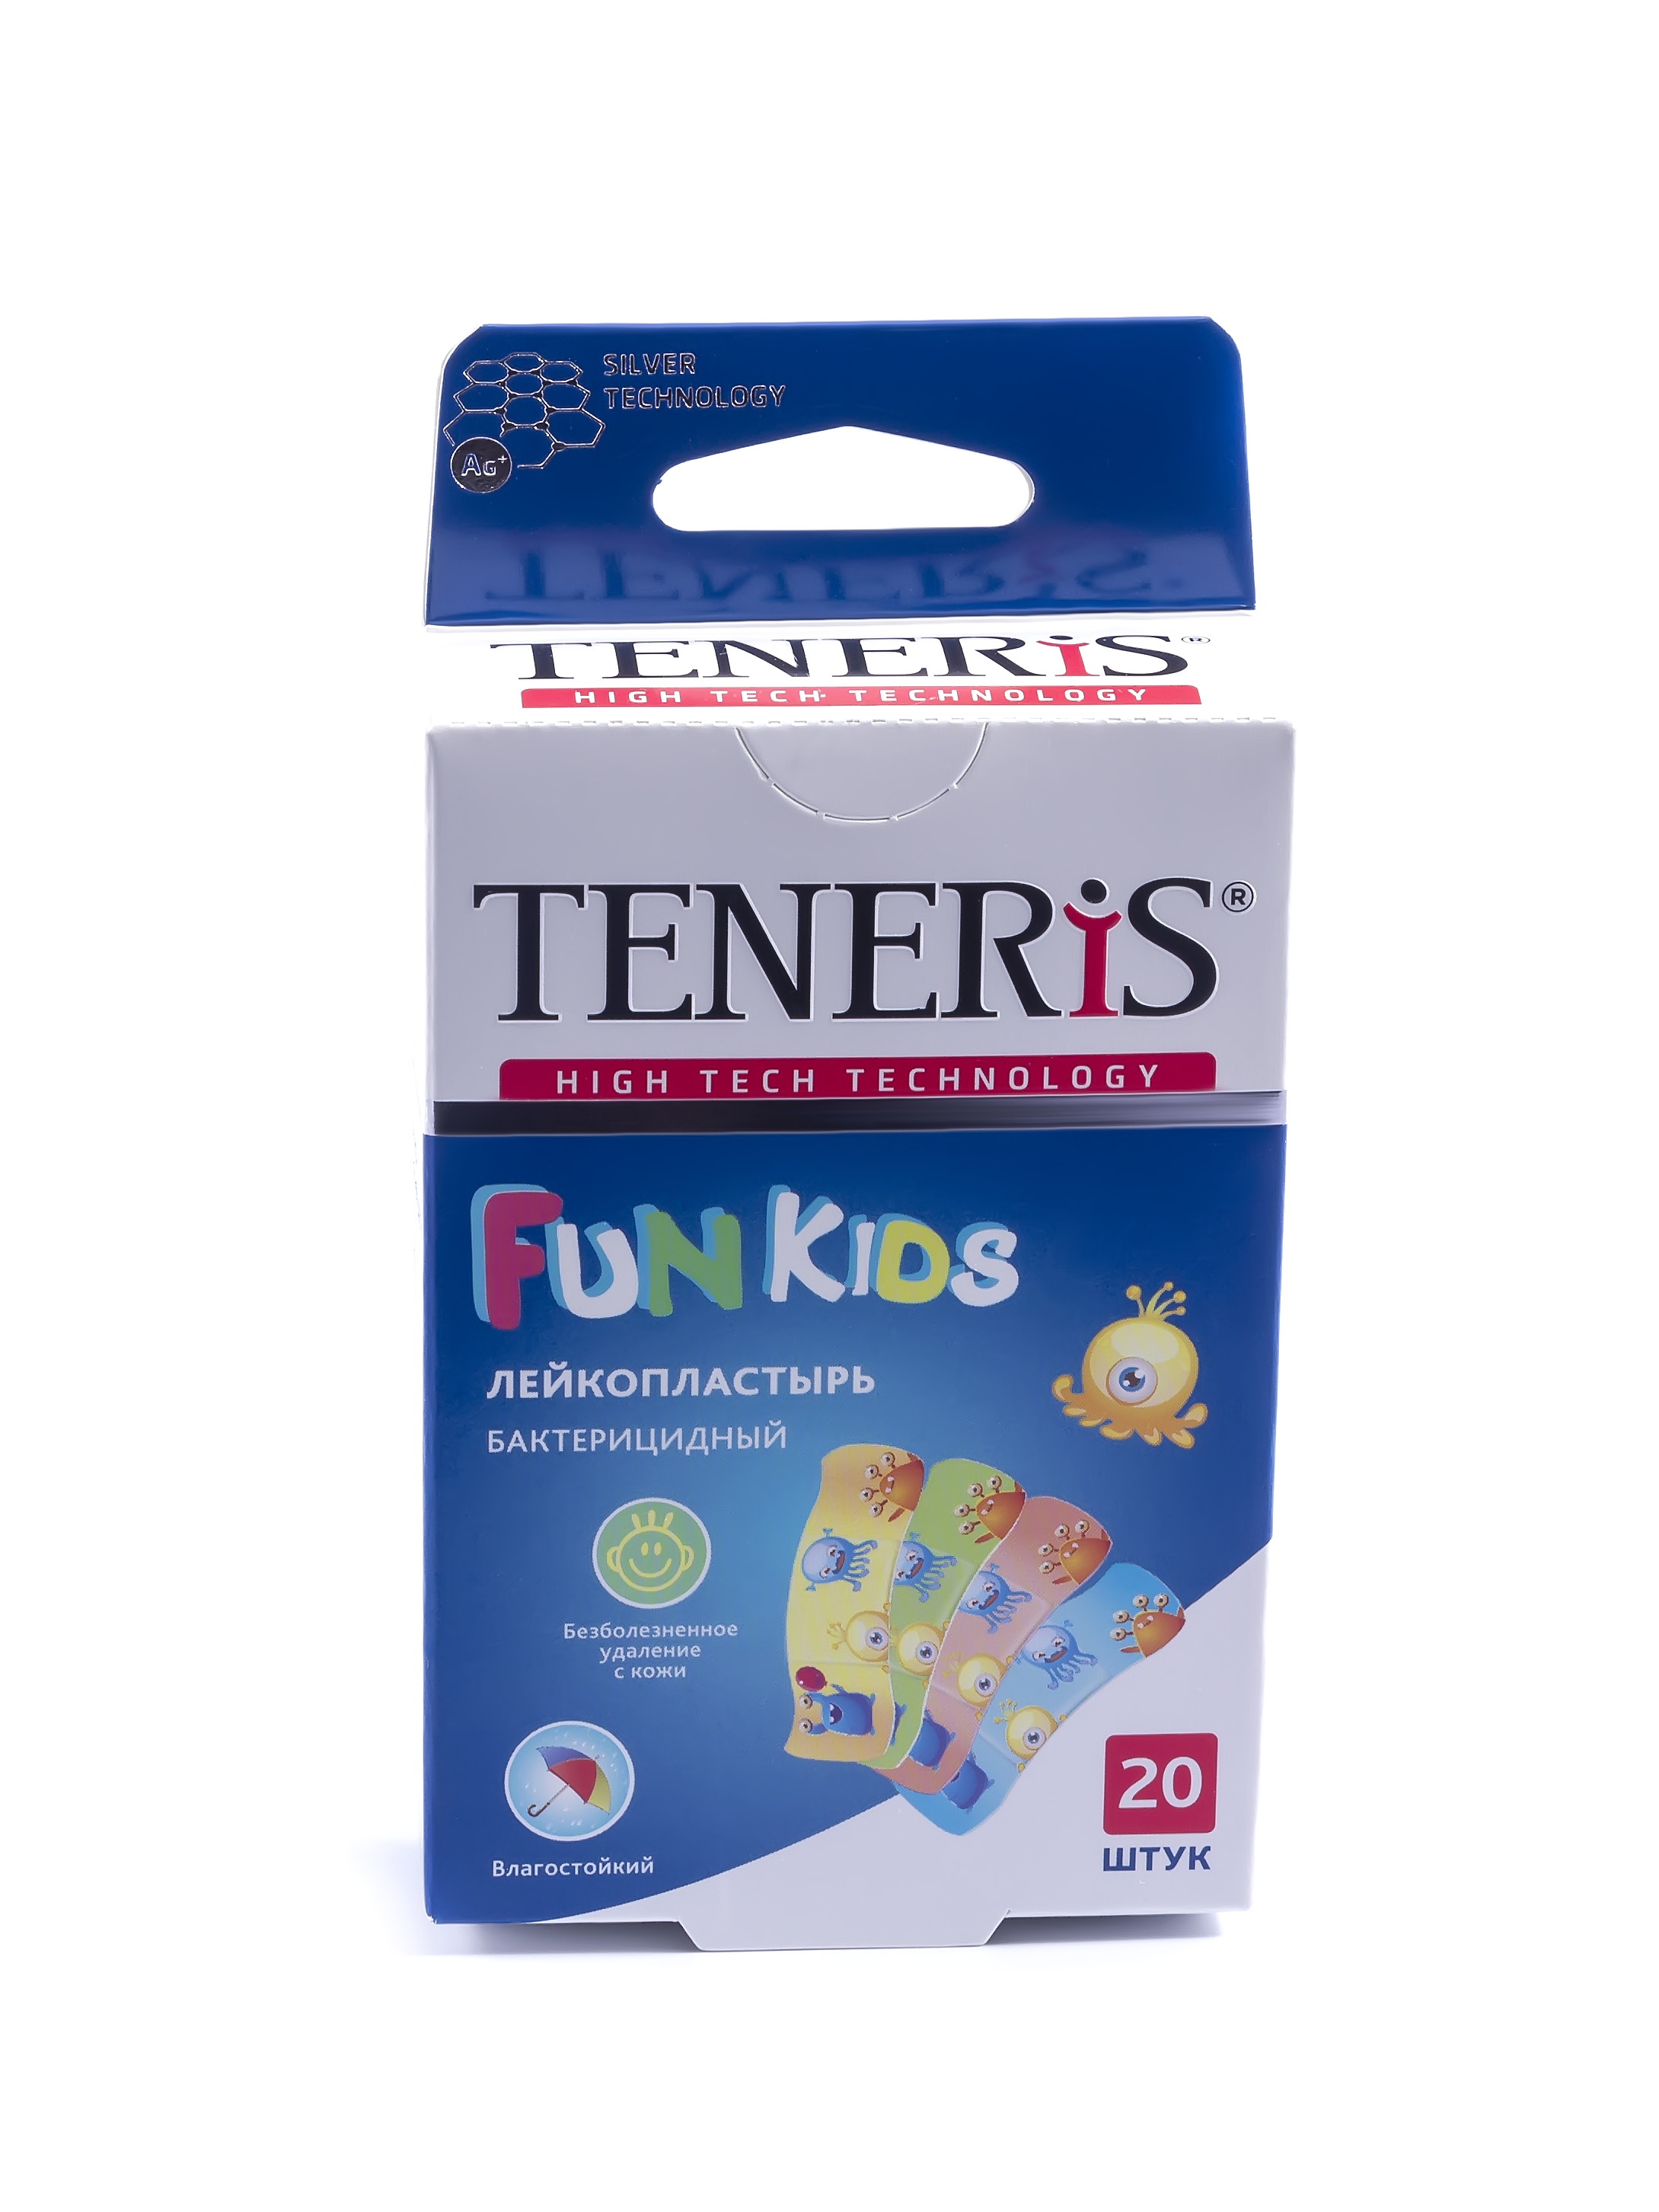 Купить Пластырь Teneris Fun Kids бактерицидный на полимерной основе с рисунками 20 шт.